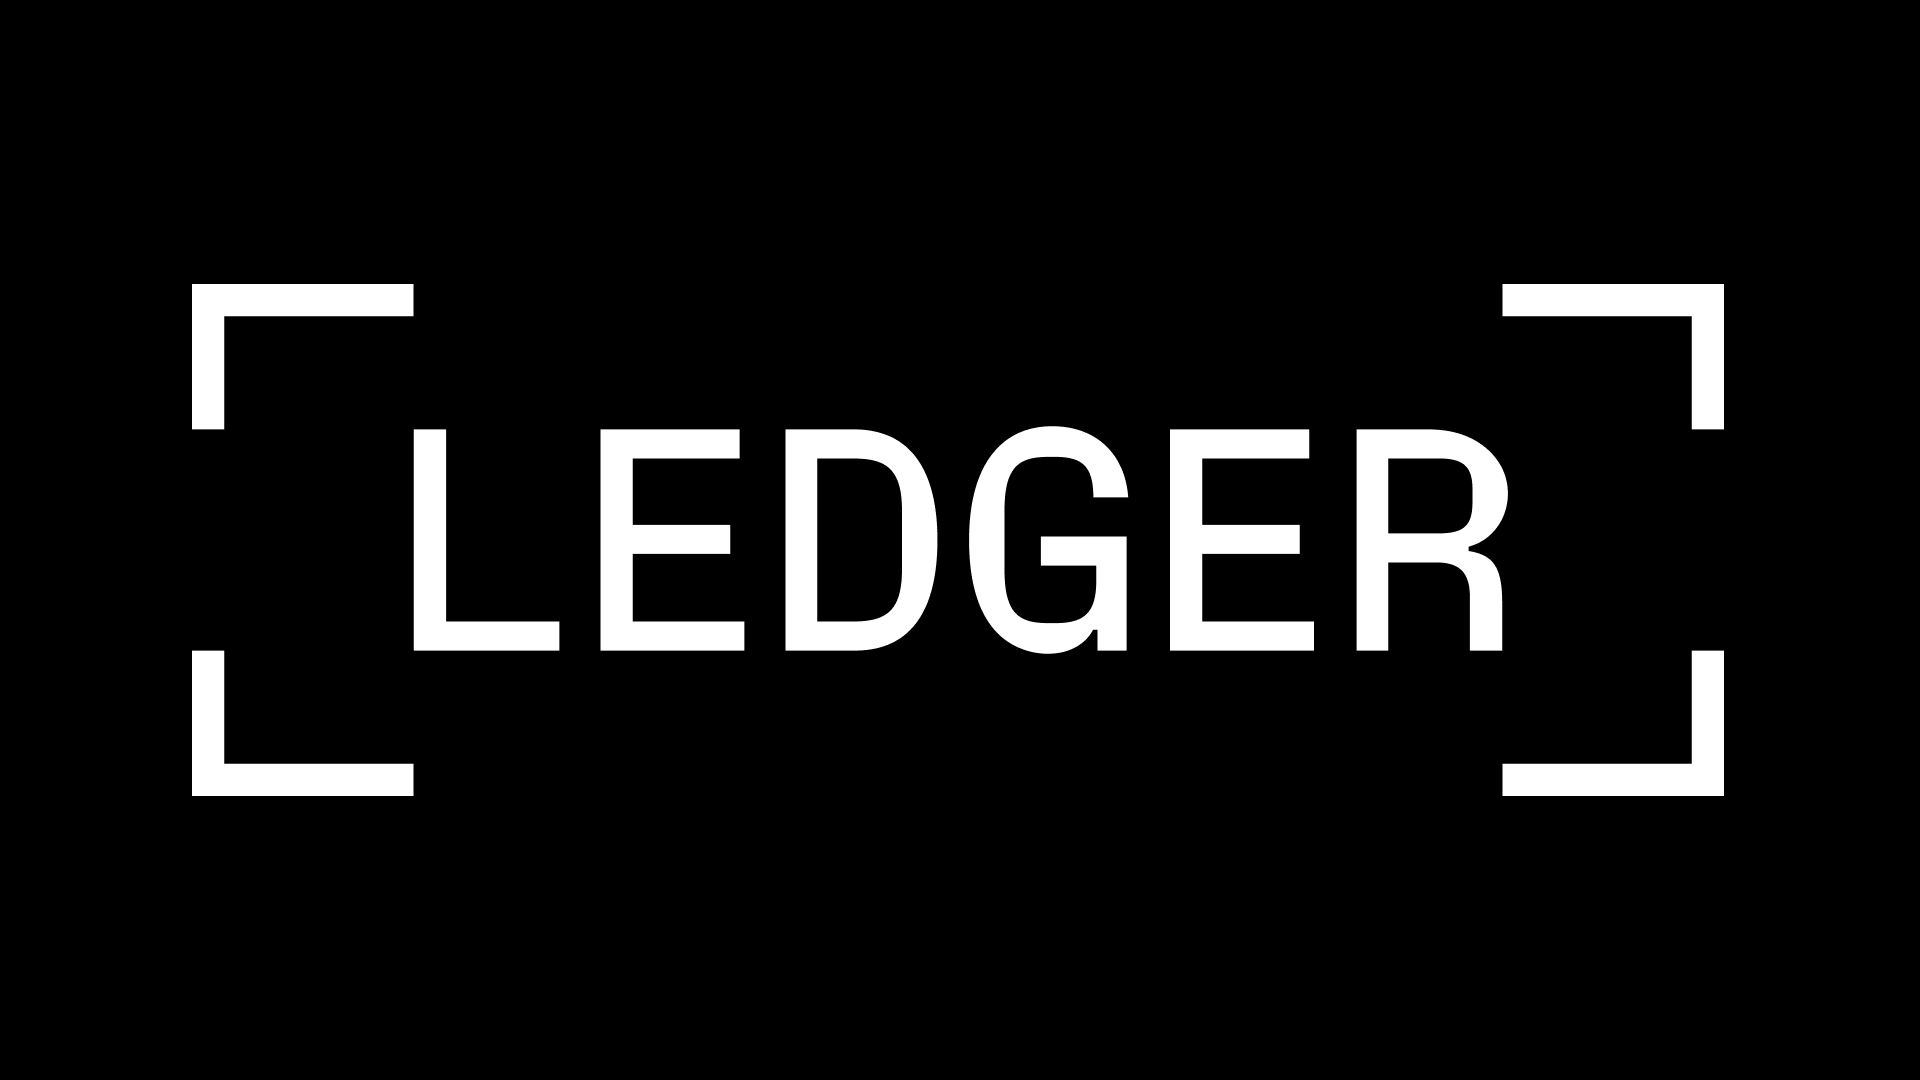 เข้าร่วมการแข่งขัน Ledger และรับชุด Ledger x Fvckrender! | บัญชีแยกประเภท